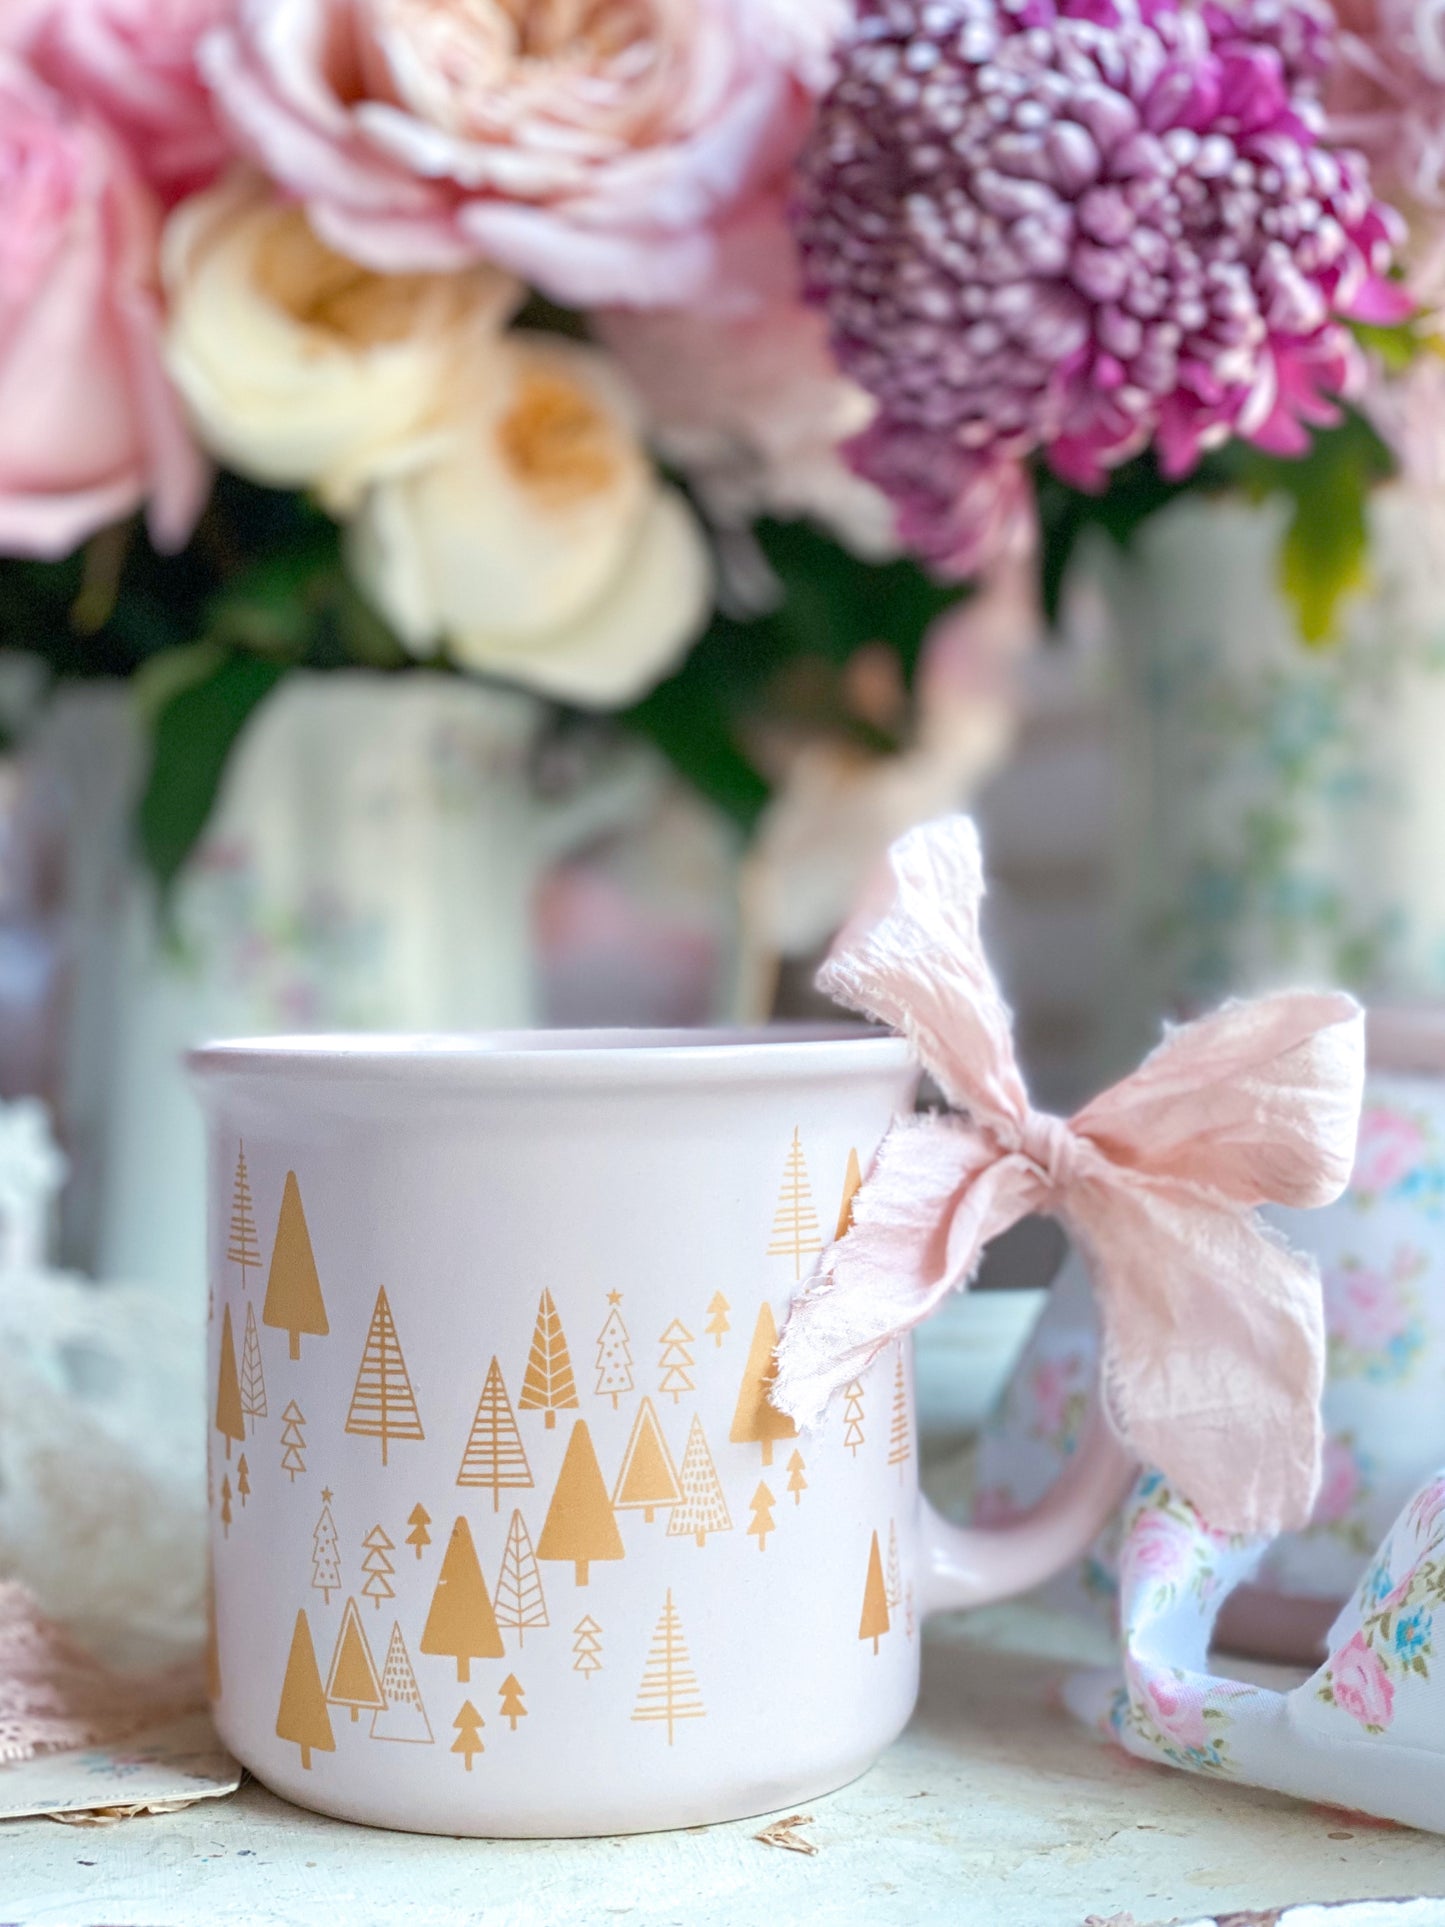 Pink mug with Gold Christmas Trees